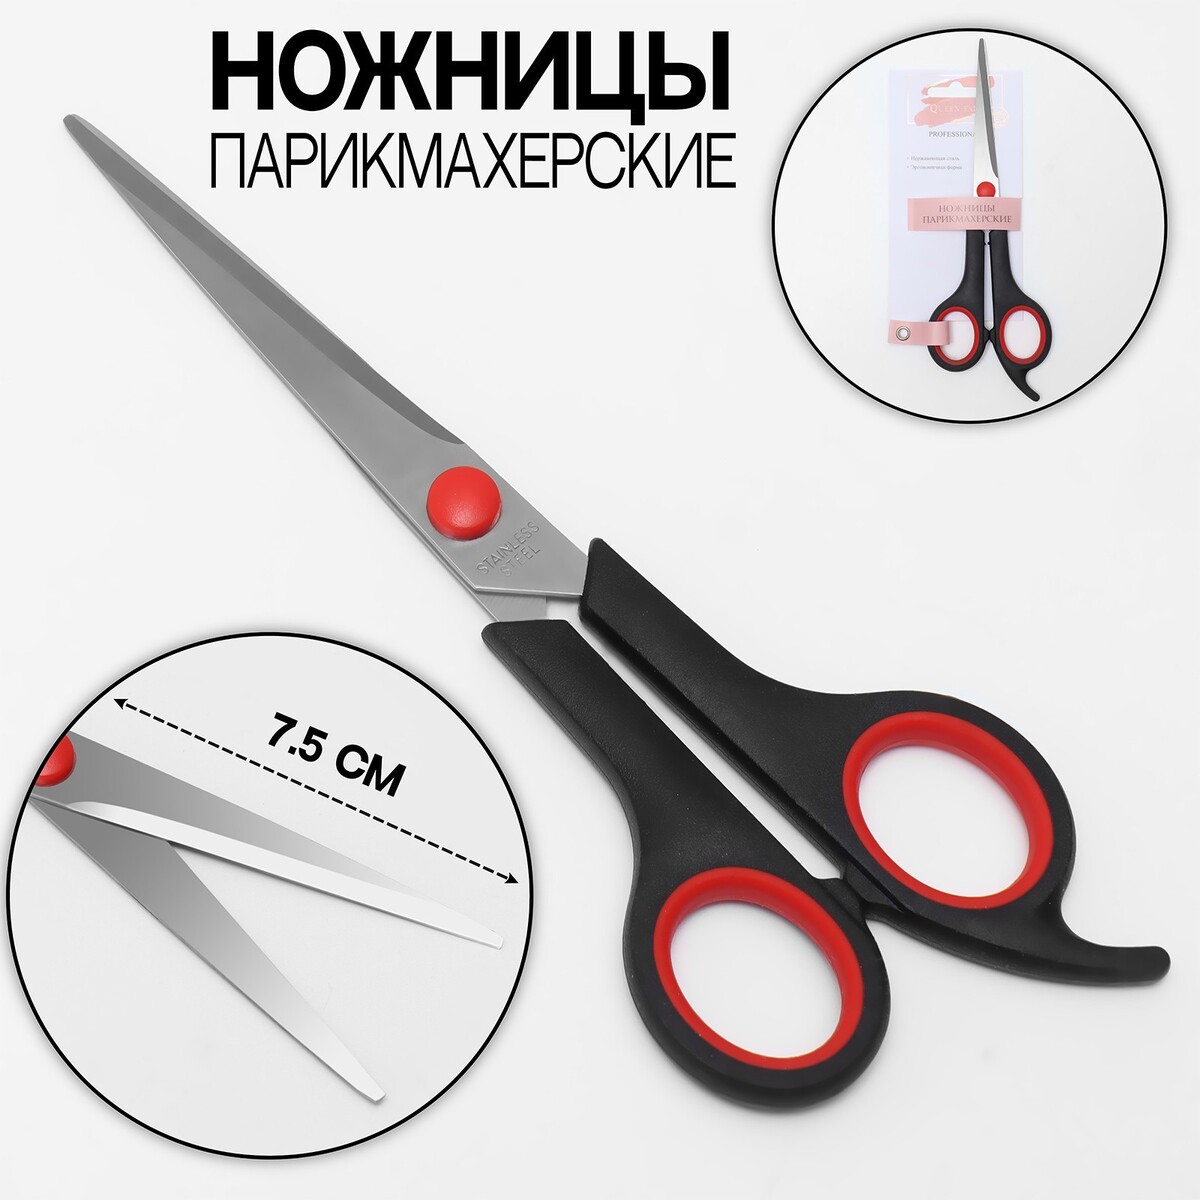 Ножницы парикмахерские с упором, лезвие — 7,5 см, цвет черный/красный